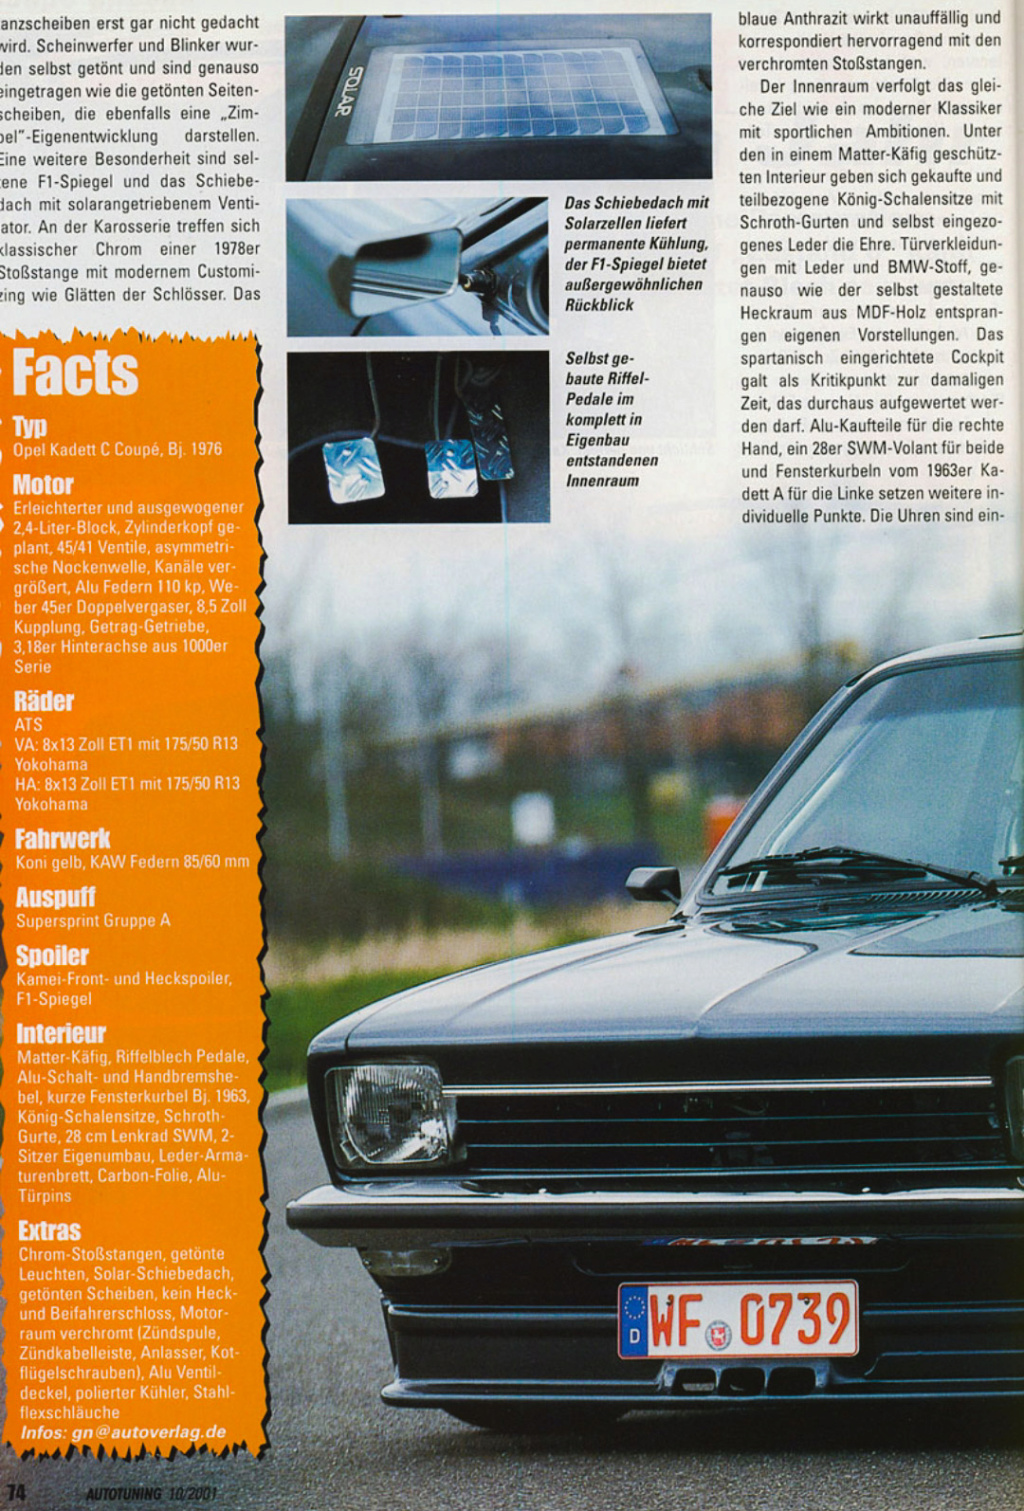 Kadett C1 Coupé -  Článek z magazínu Autotuning 10/2001 Psx_2568